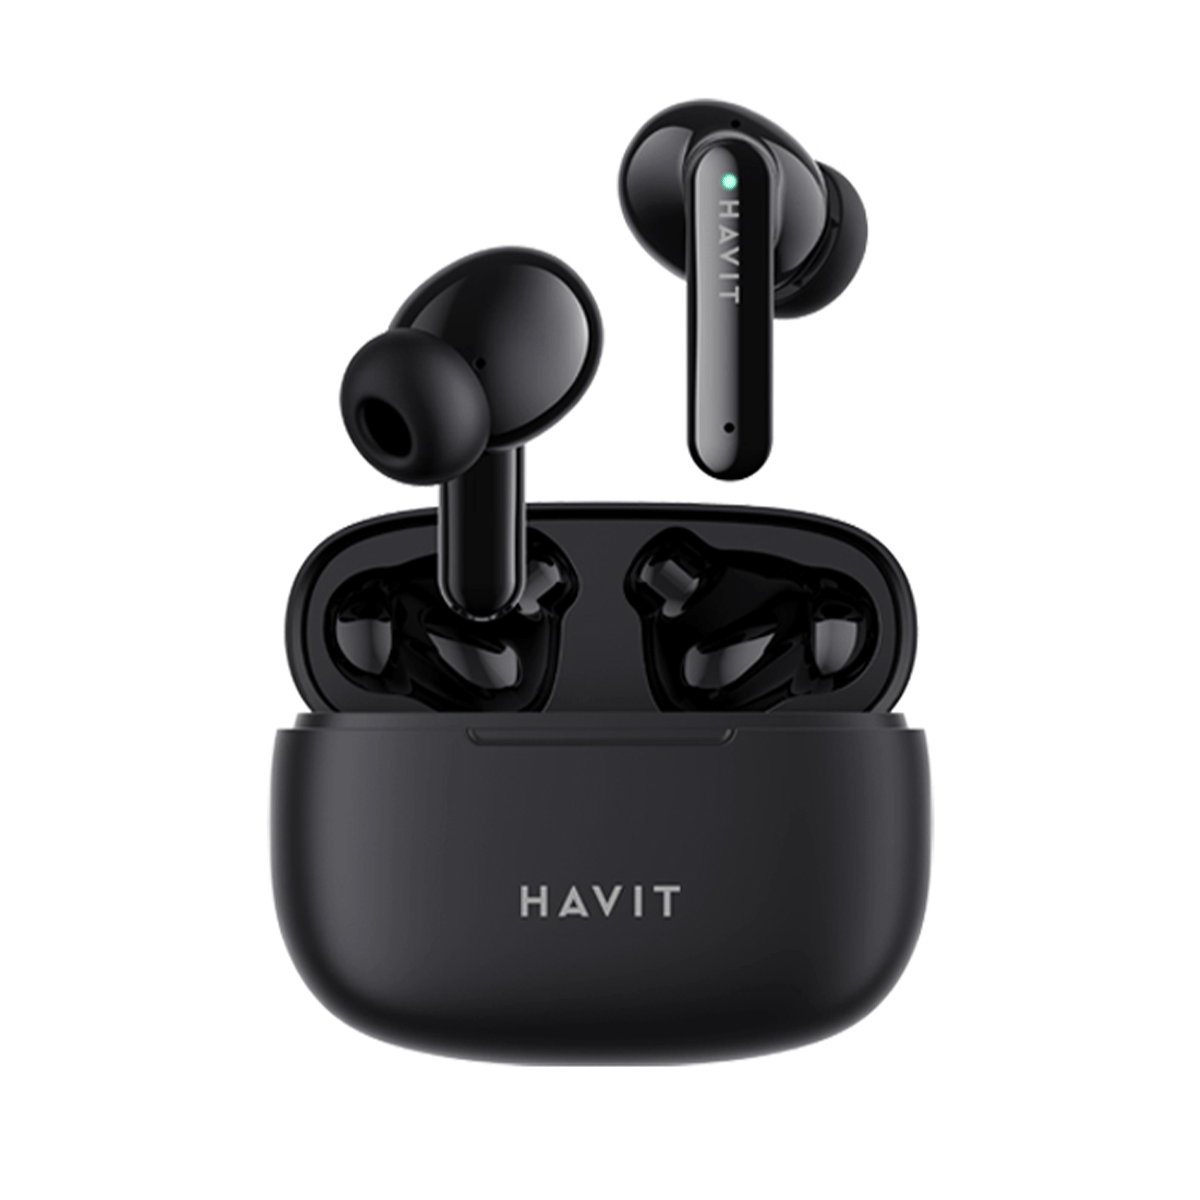 Hướng dẫn kết nối tai nghe Havit TW 967 với điện thoại iPhone?
